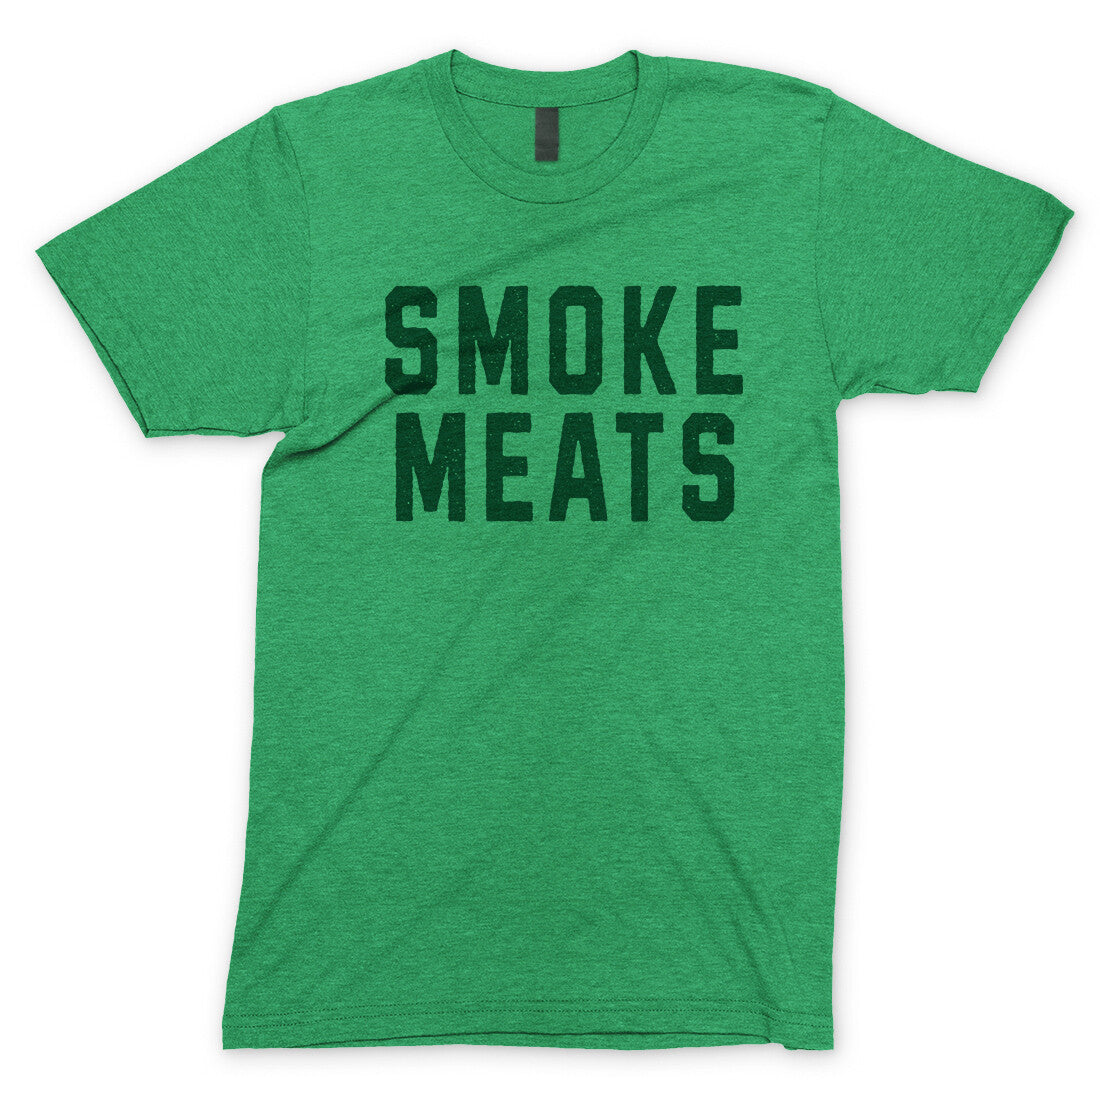 Smoke Meats in Heather Irish Green Color